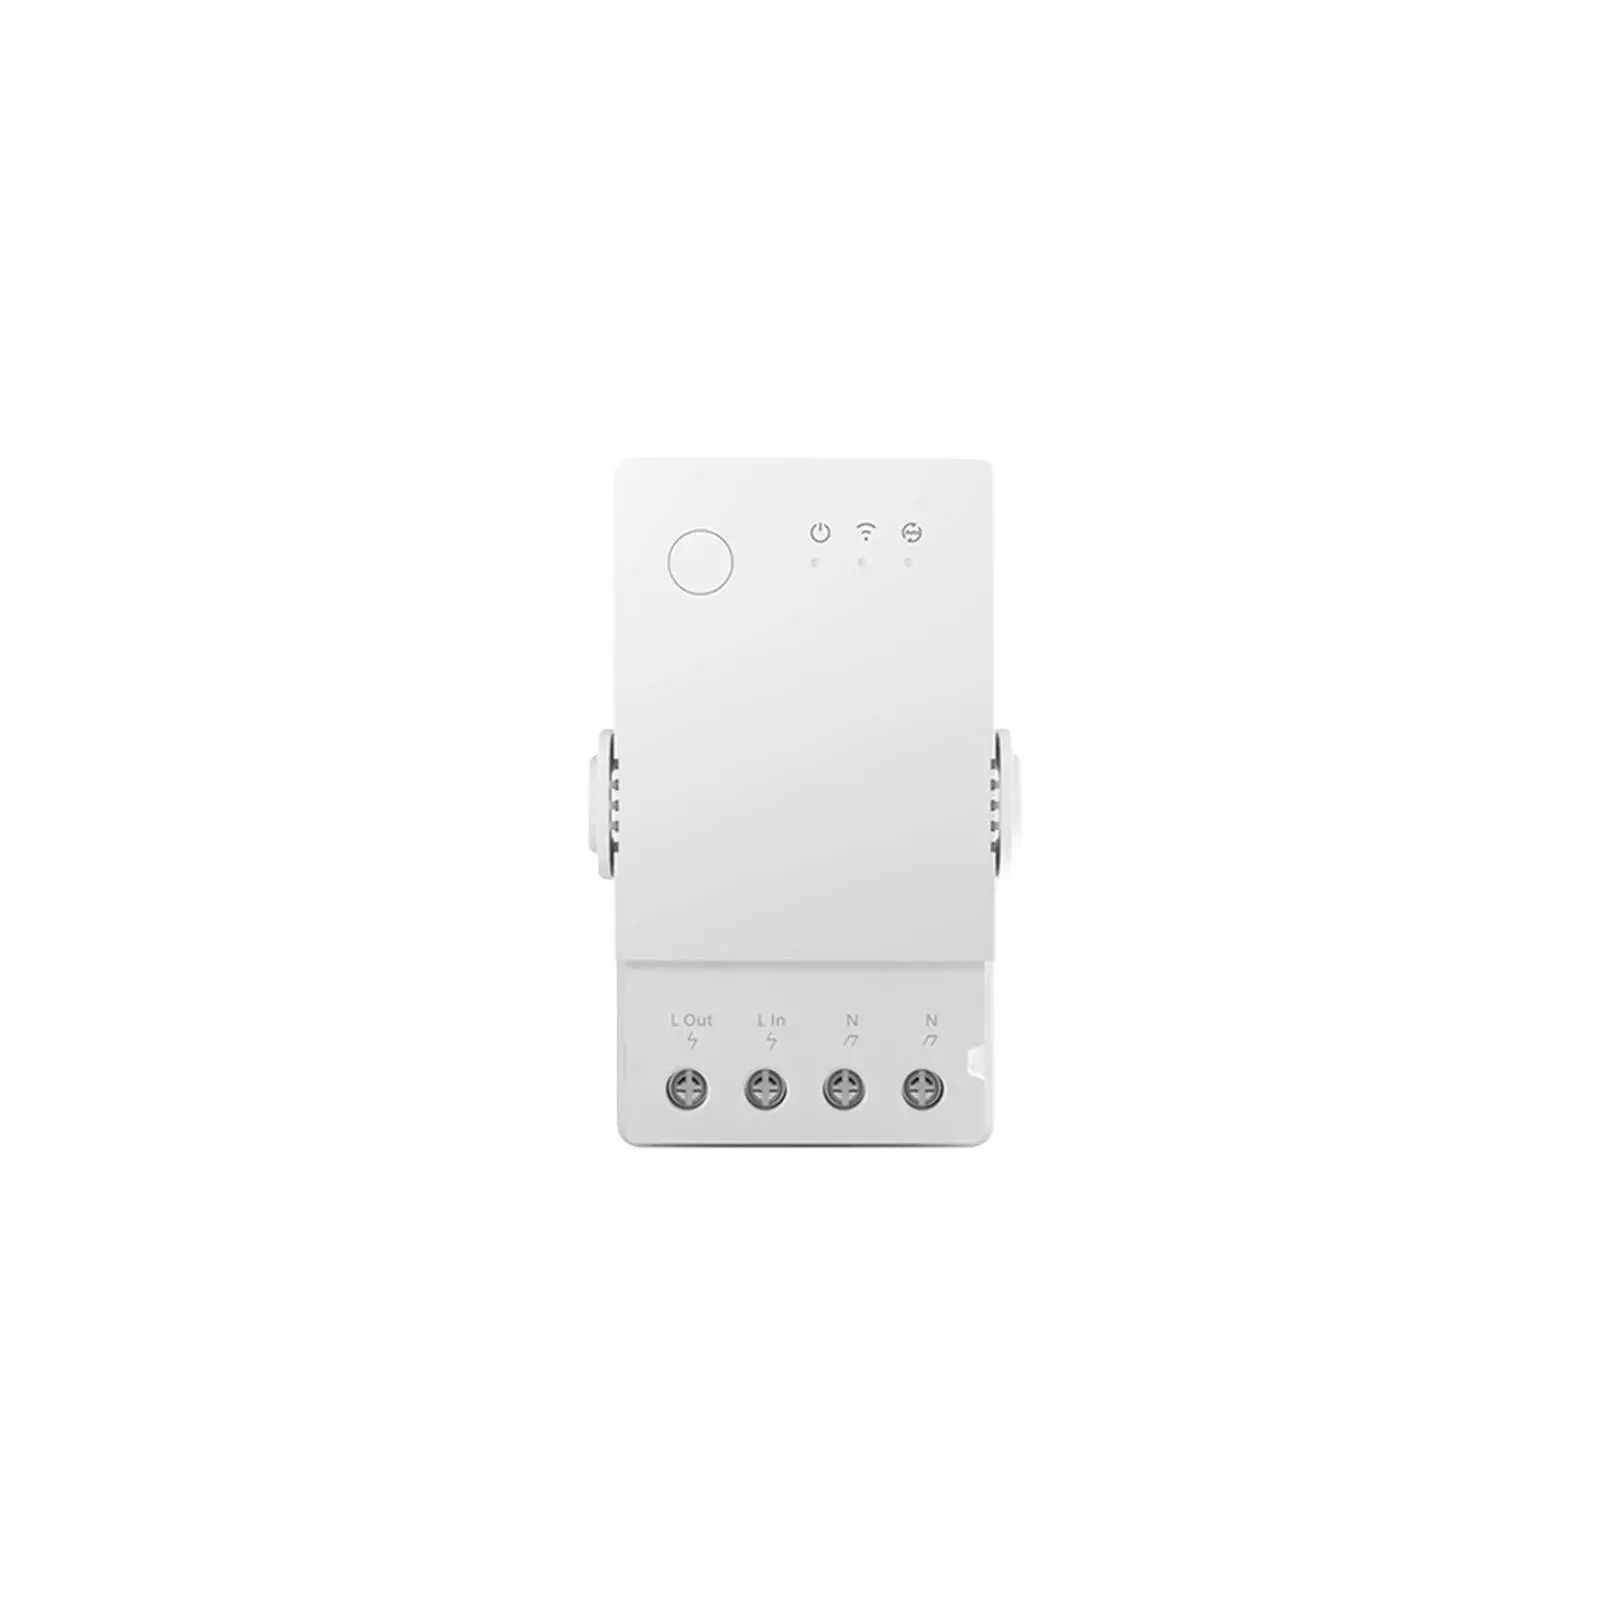 Sonoff TH Origin THR320 20A Temperature Humidity Monitoring Switch